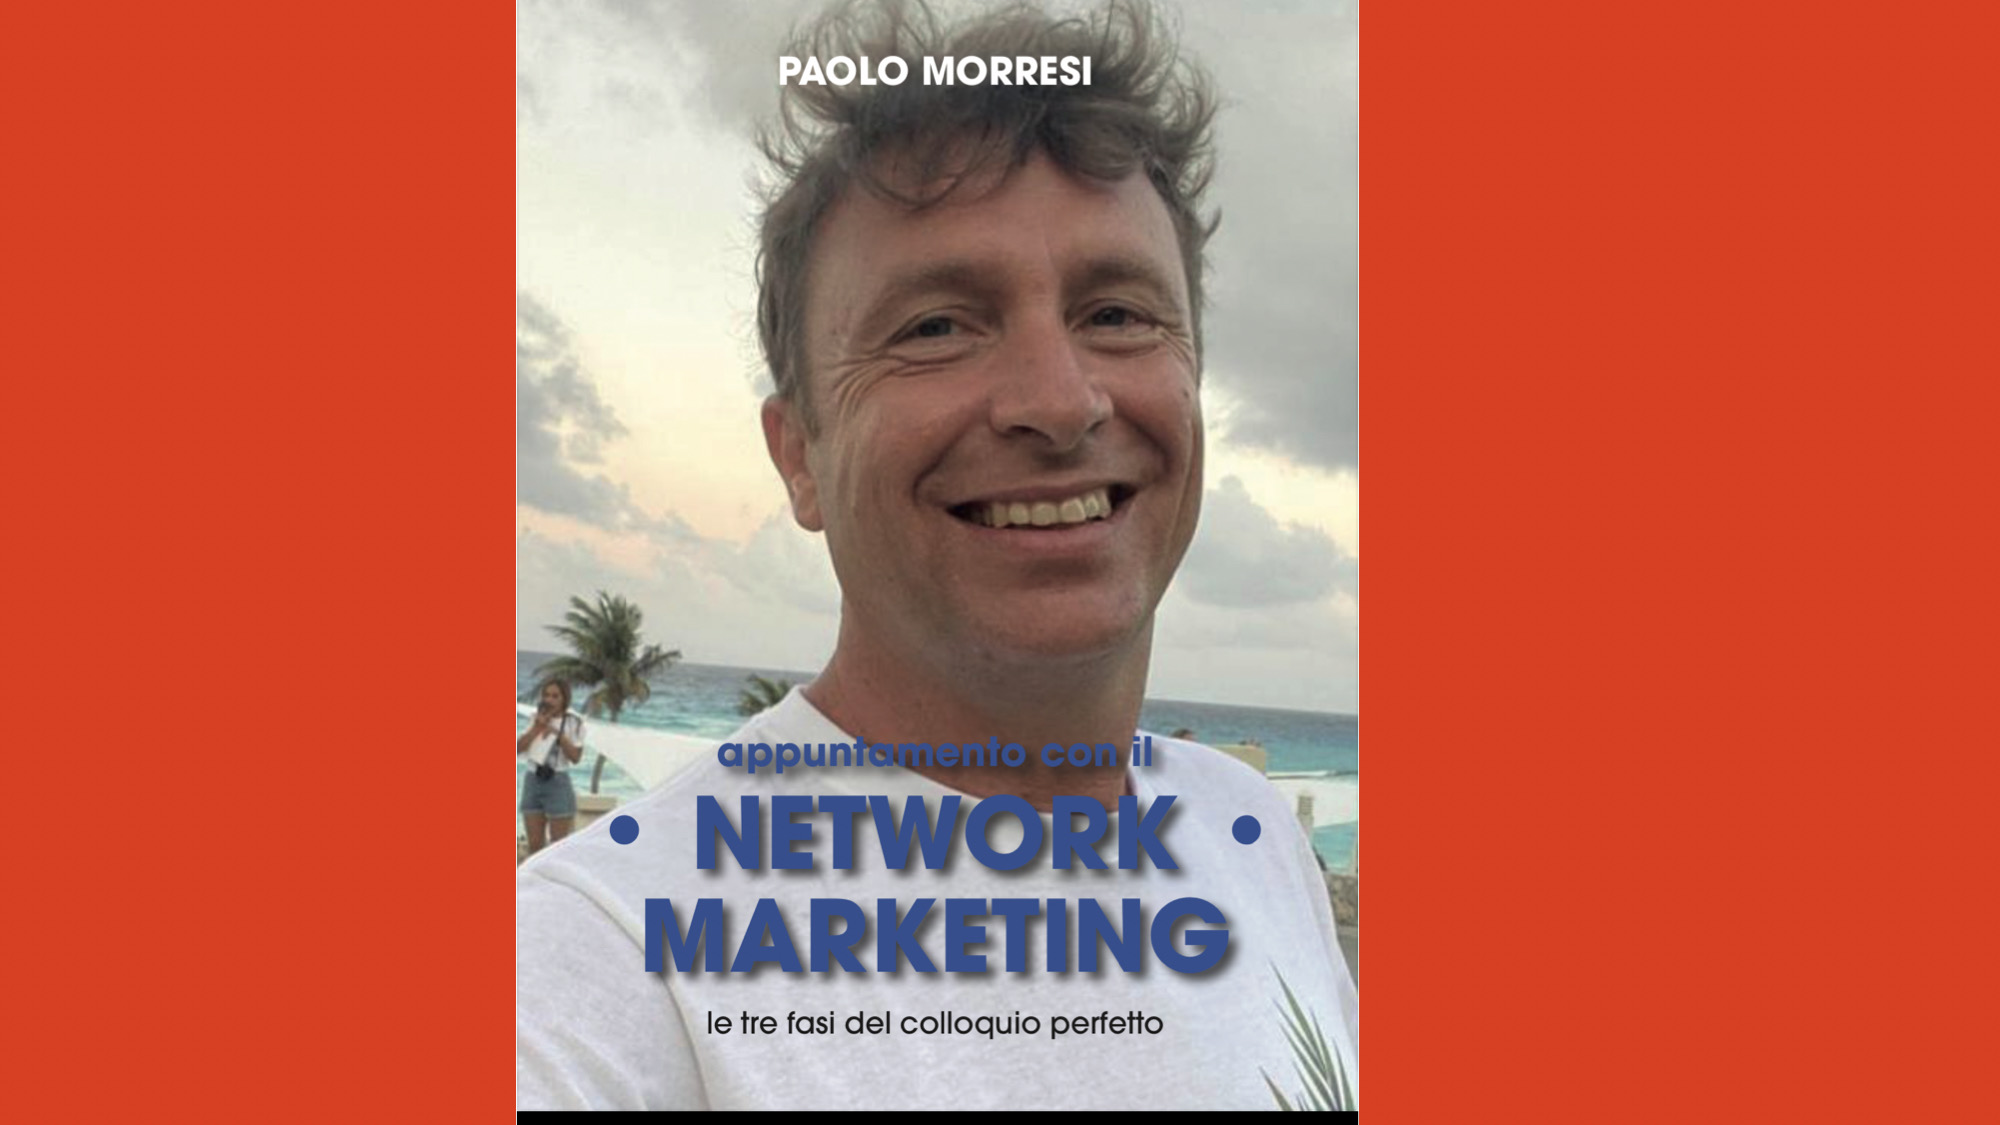 Paolo Morresi: Appuntamento con il network marketing - Le tre fasi del colloquio perfetto